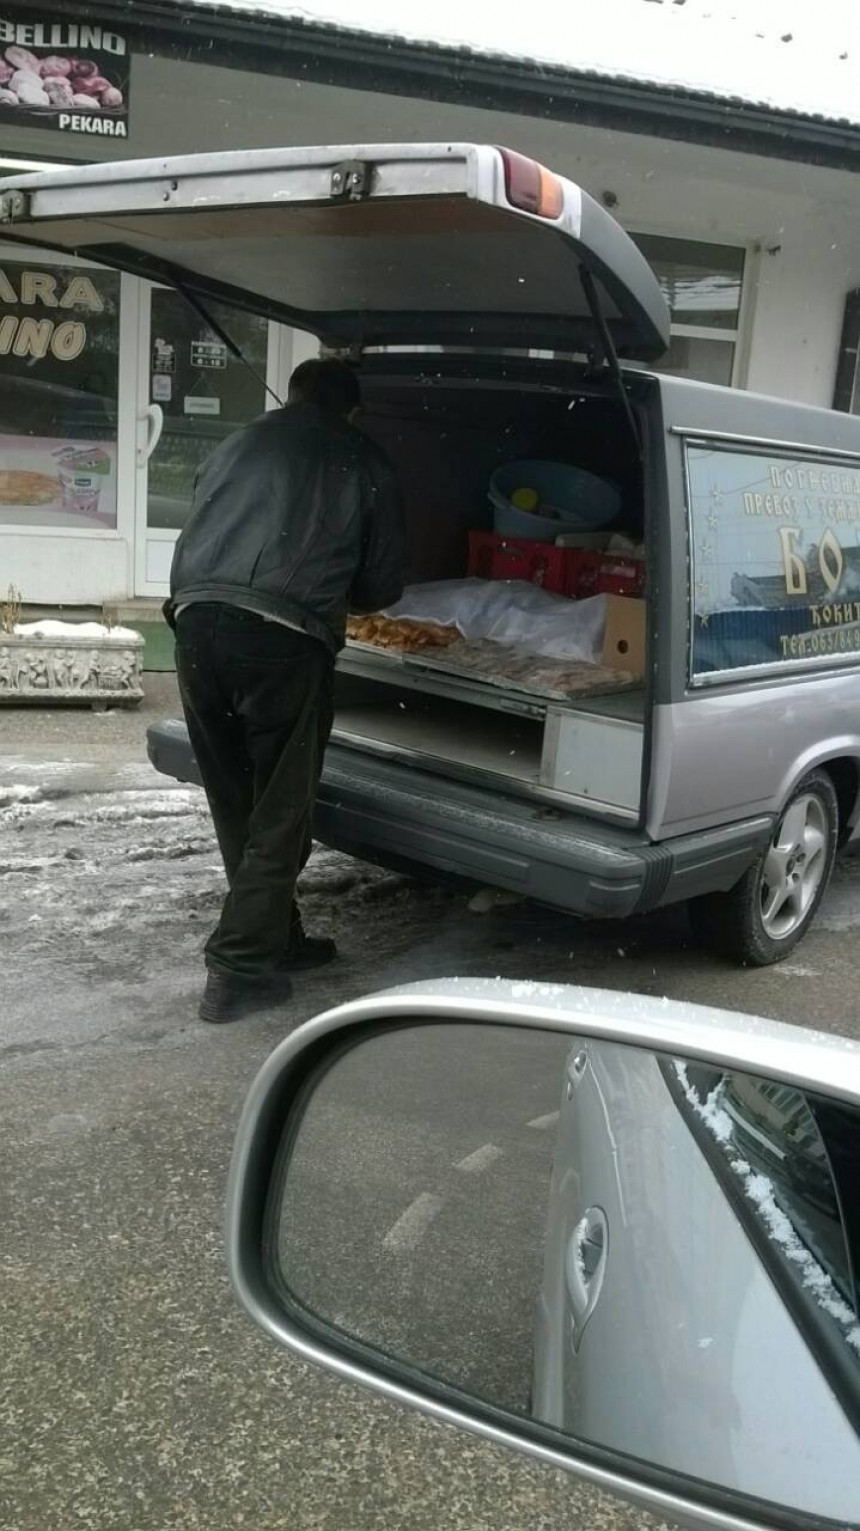 Hrana i pokojnici u istom vozilu